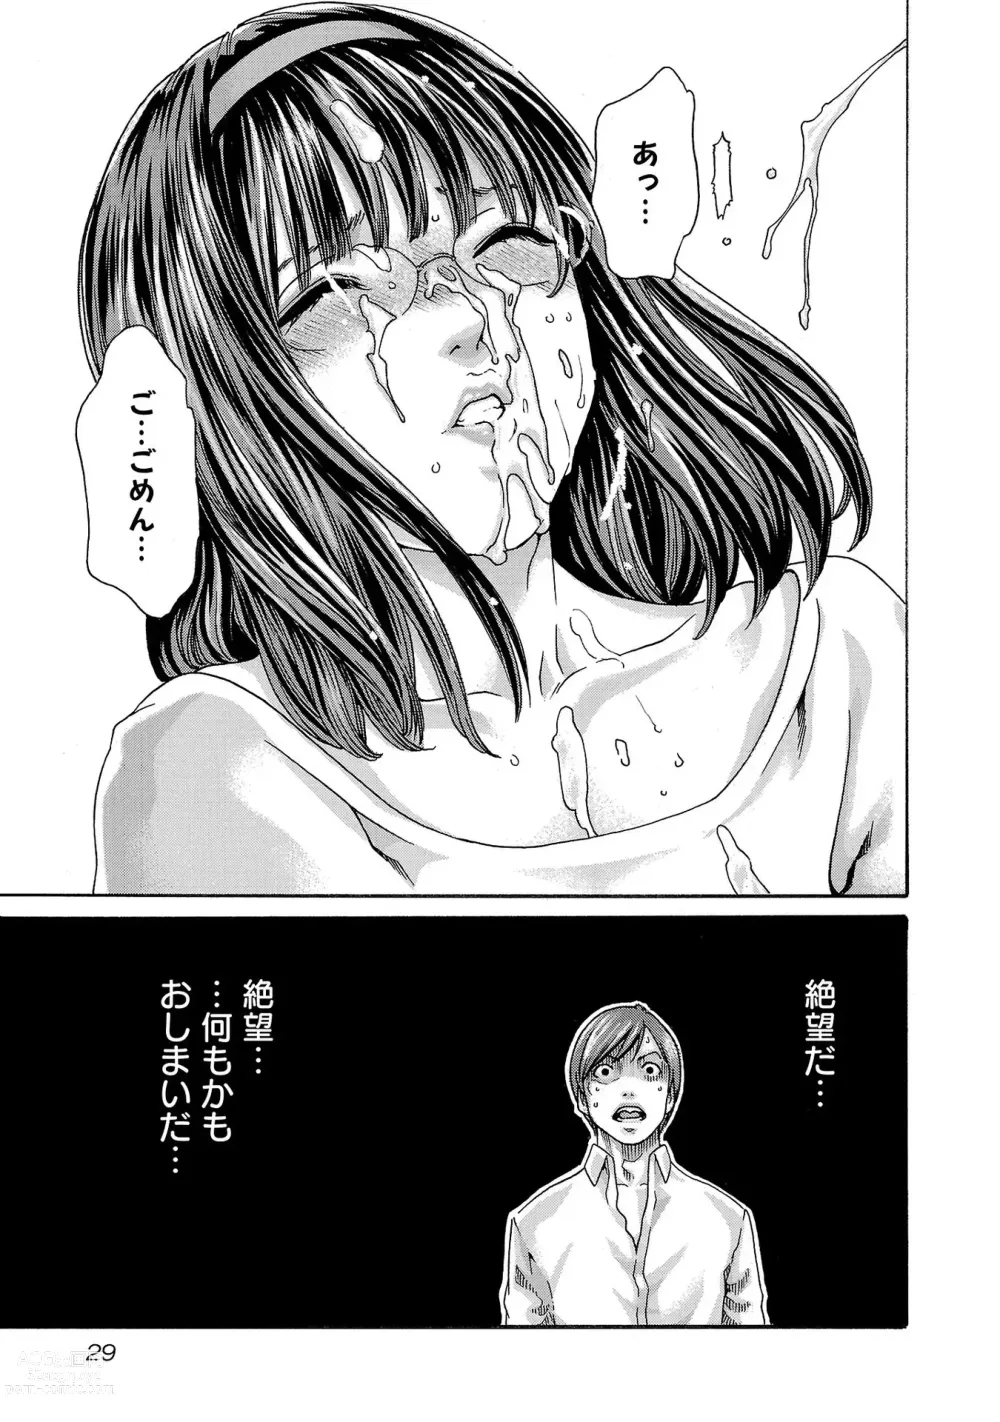 Page 30 of manga sense volume 13